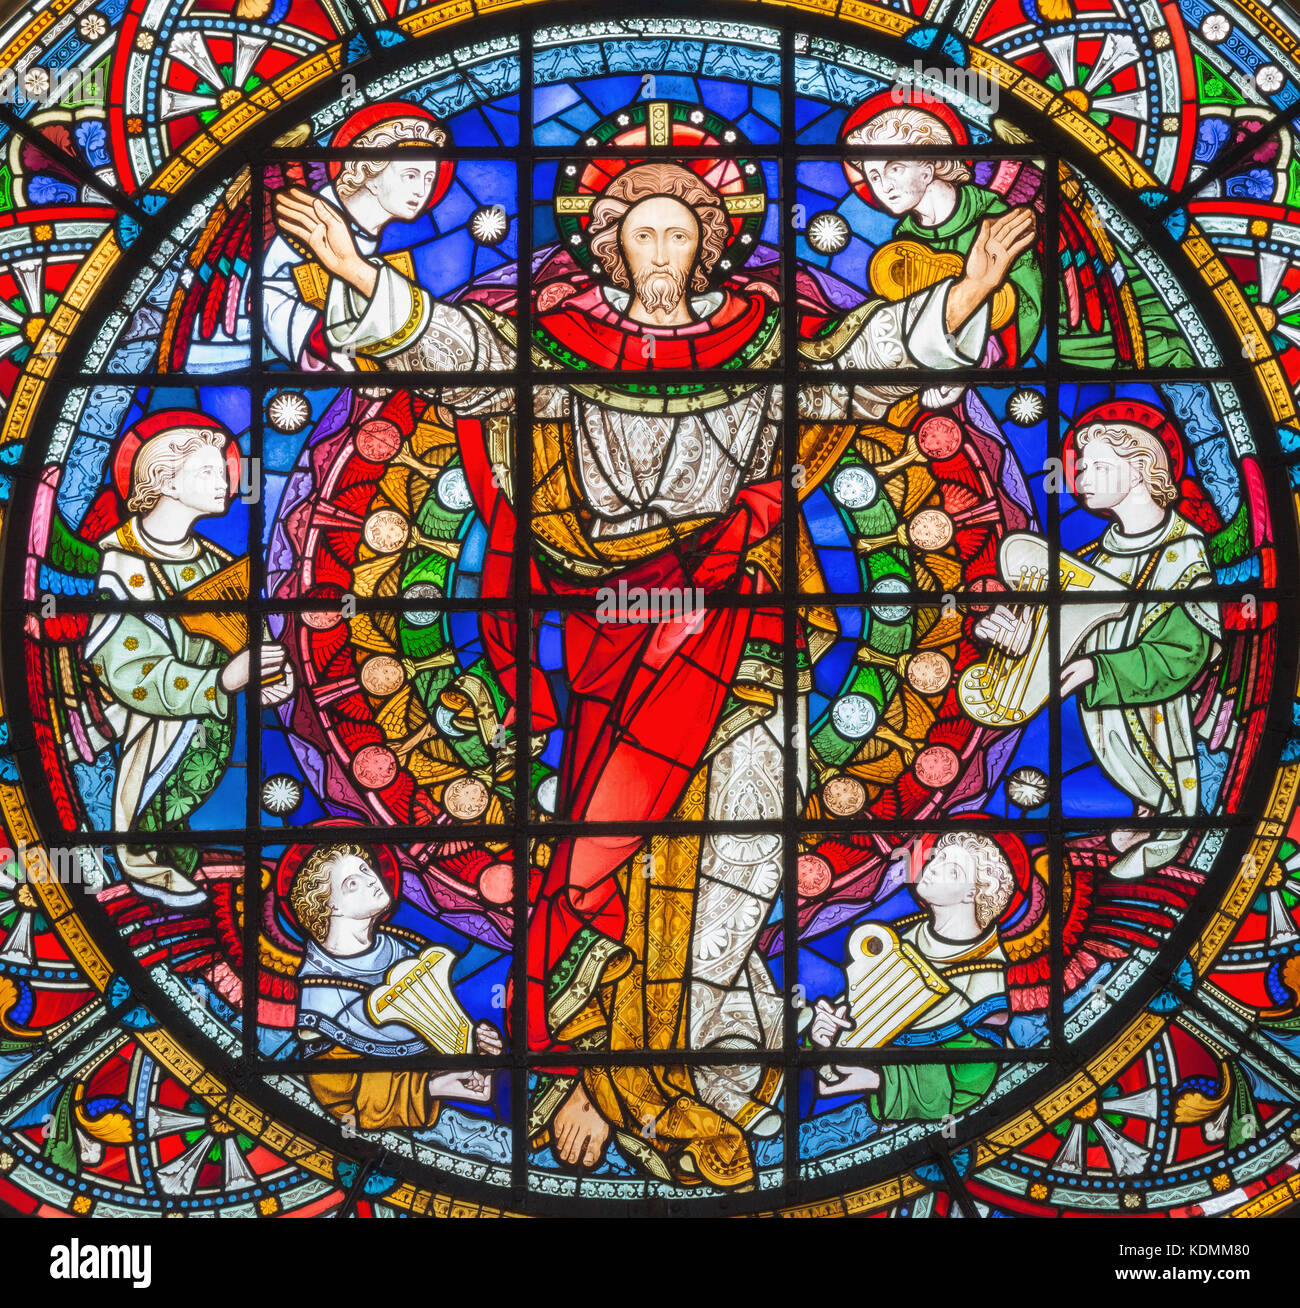 Londra, Gran Bretagna - 14 settembre 2017: il Risorto Gesù Cristo tra gli angeli sul vetro macchiato nella chiesa di st. Michael cornhill. Foto Stock